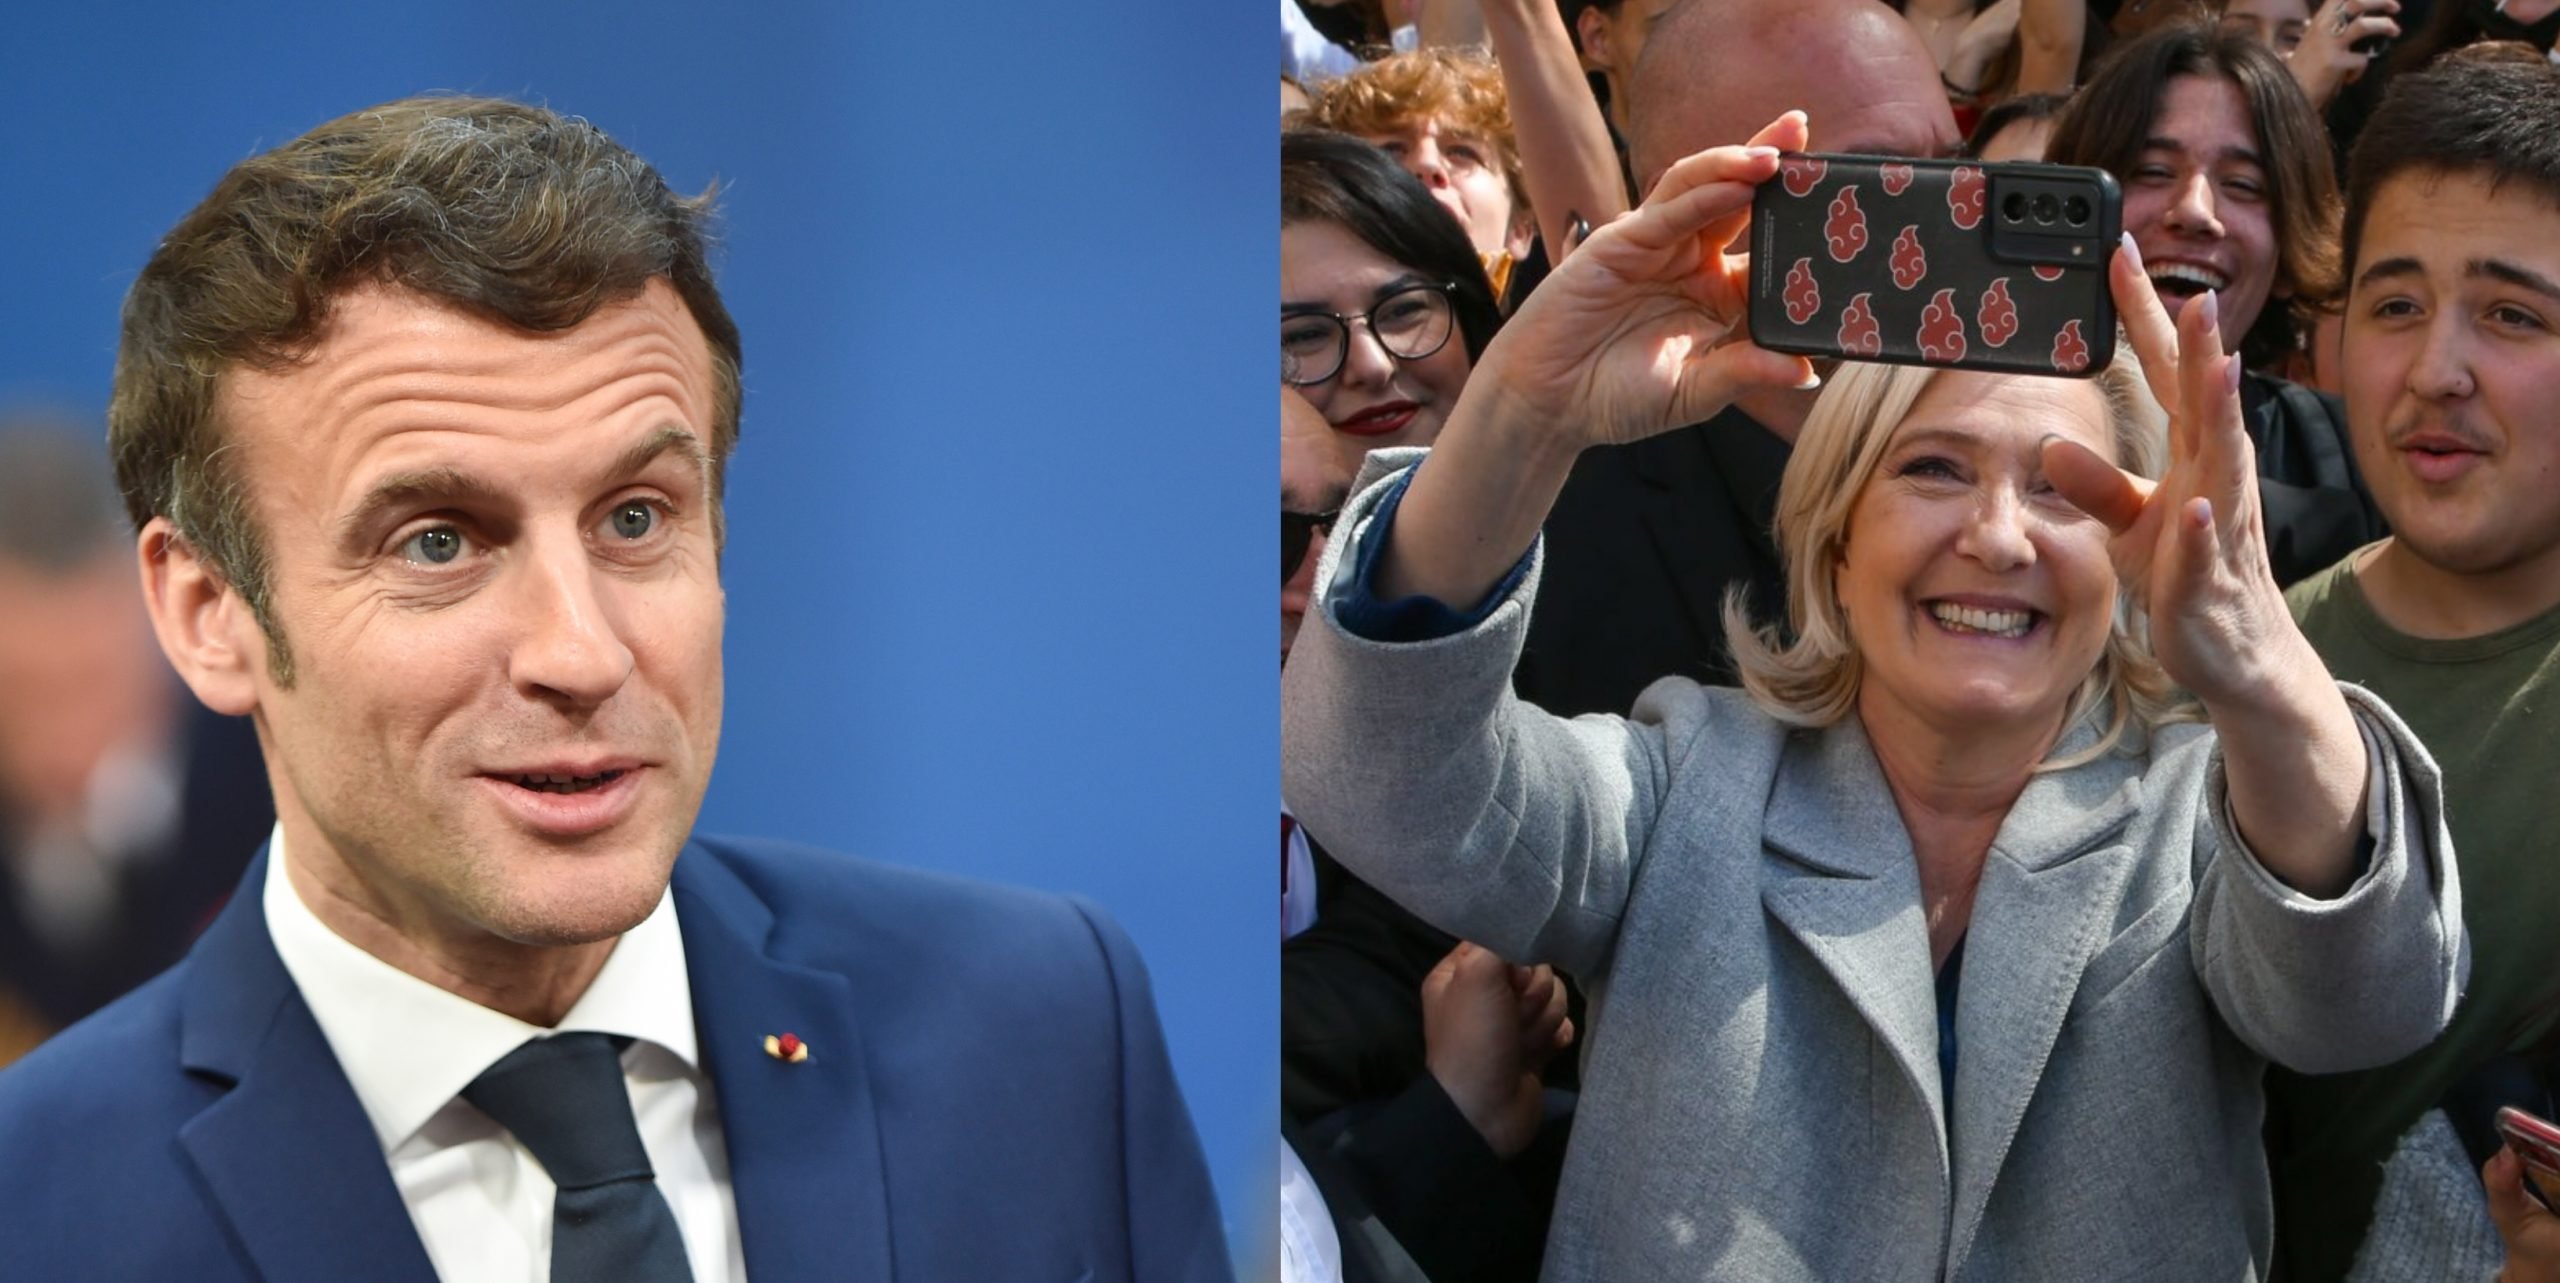  Alegeri prezidențiale în Franța. După o campanie marcată de războiul din Ucraina, Macron și Le Pen sunt favoriți să intre în turul doi